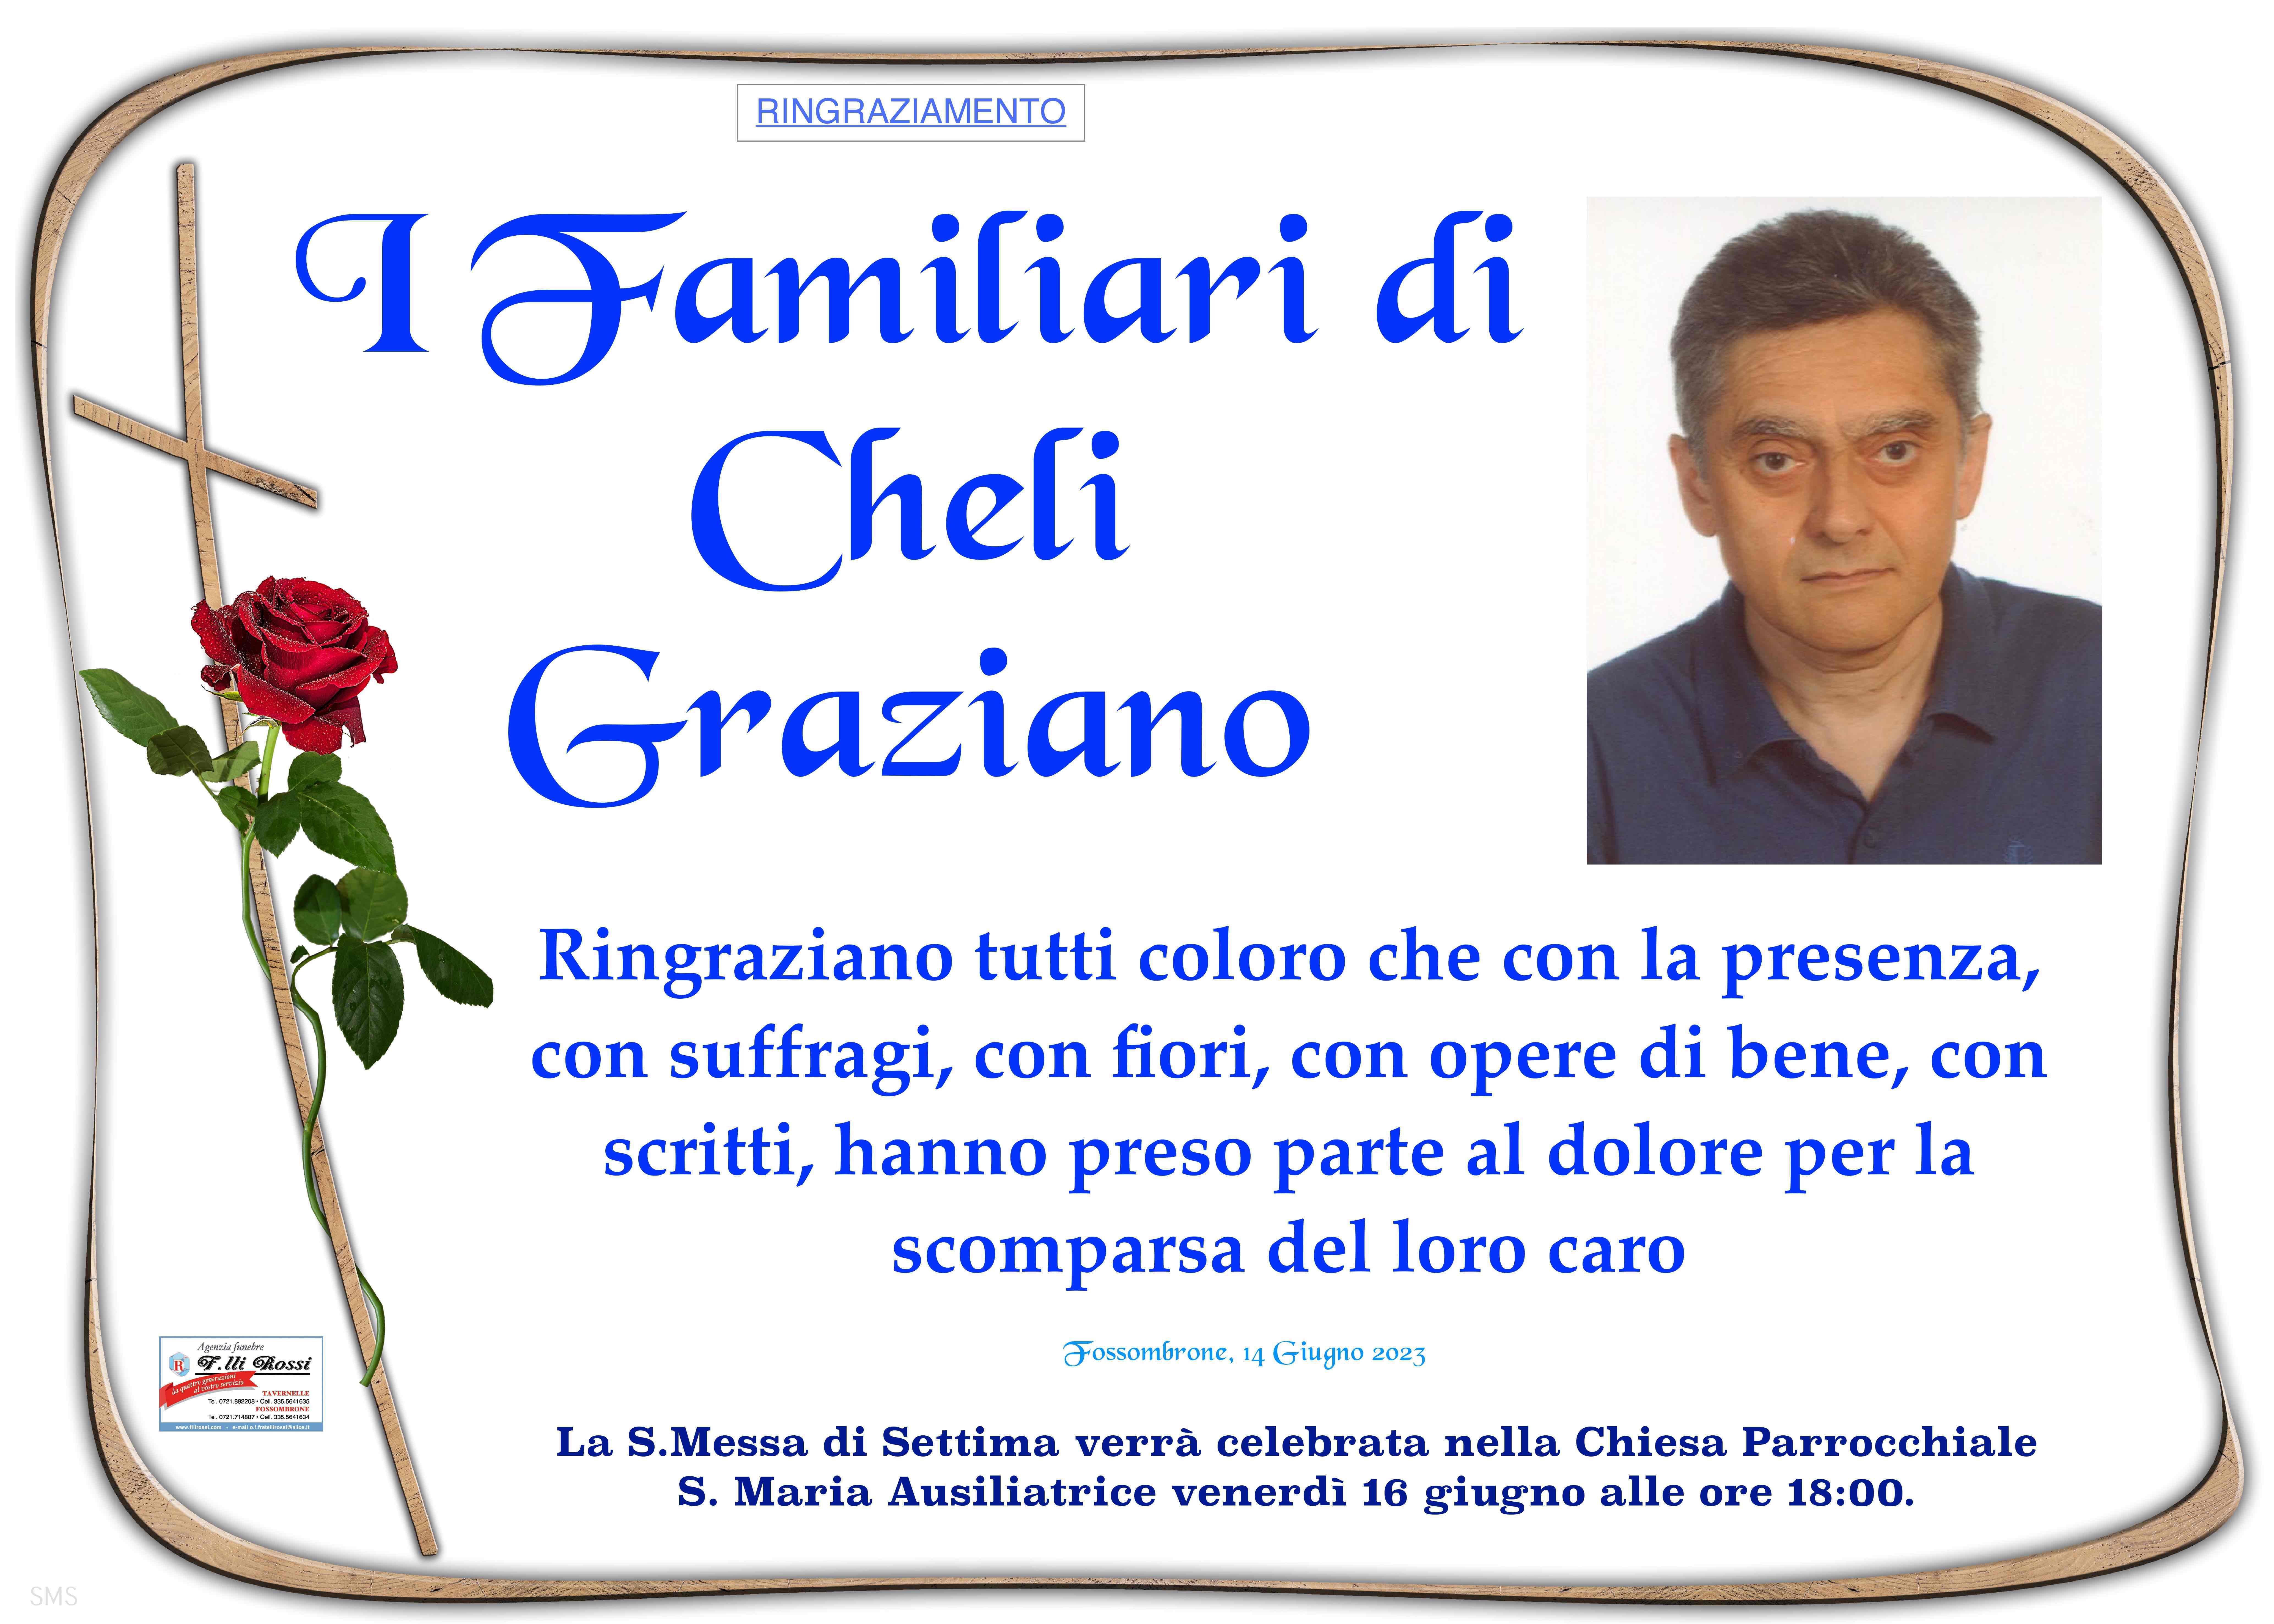 Graziano Cheli